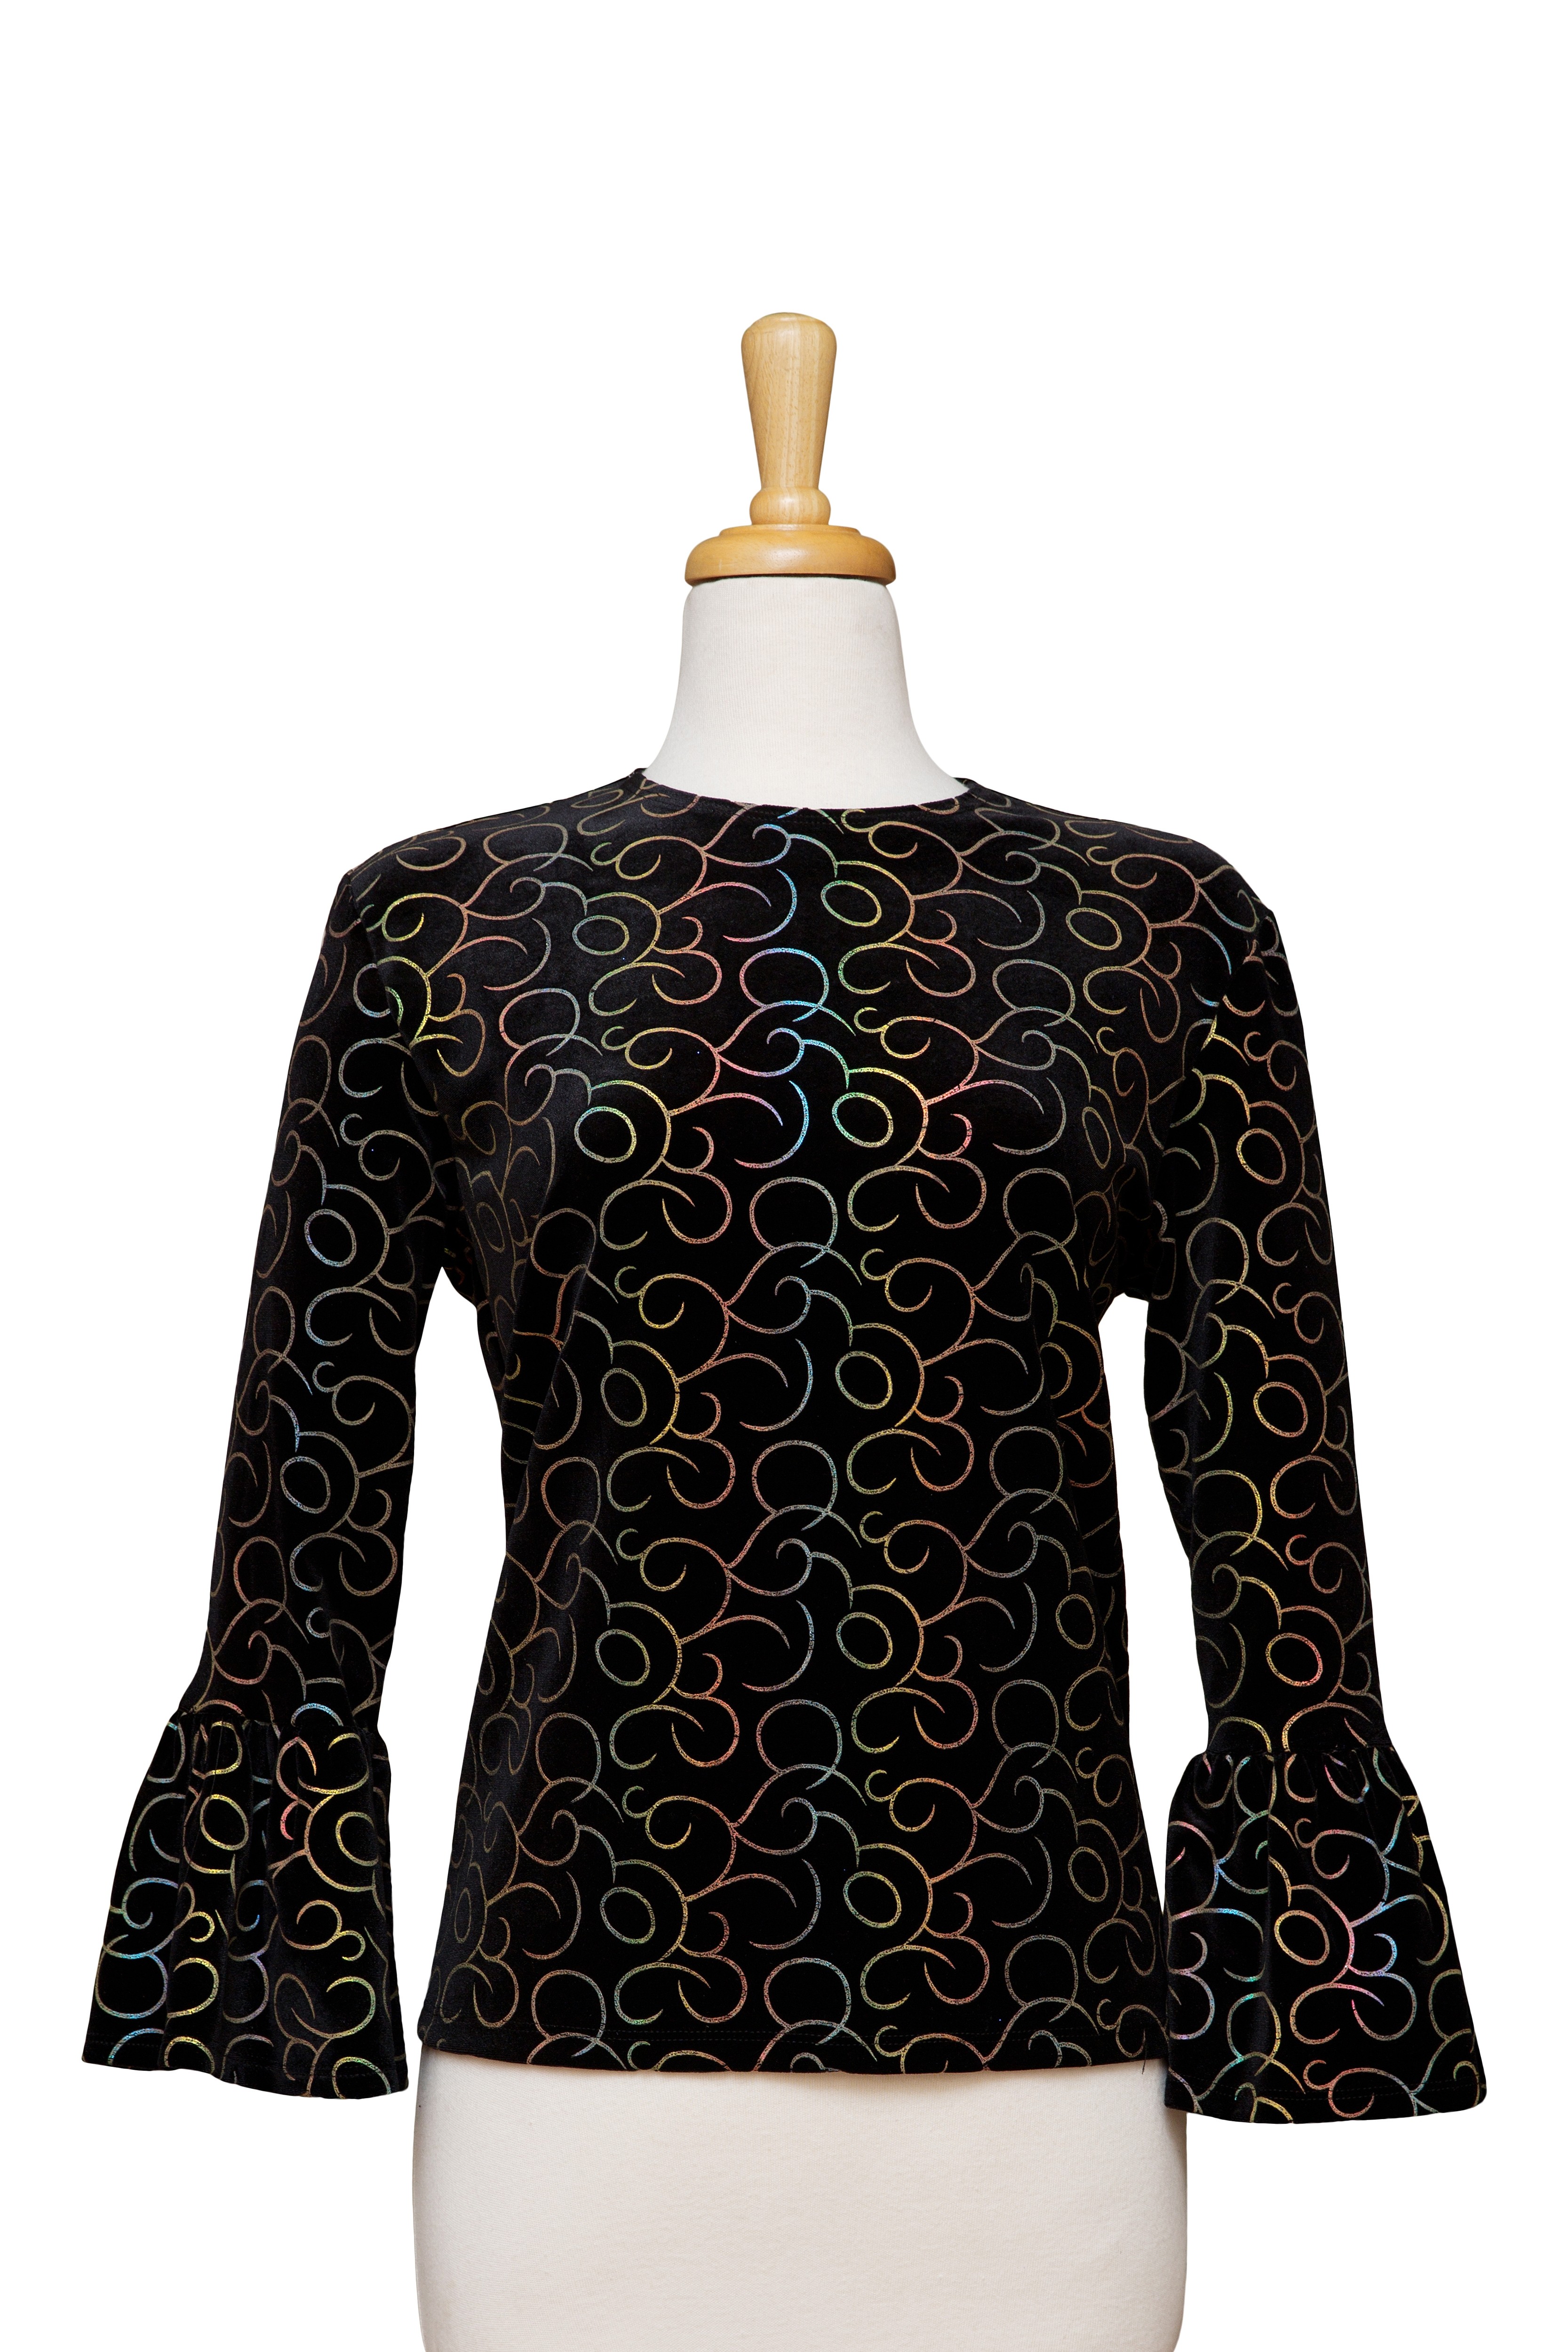 Black Velvet with Multi Color Foil Swirls Bell Sleeve Top